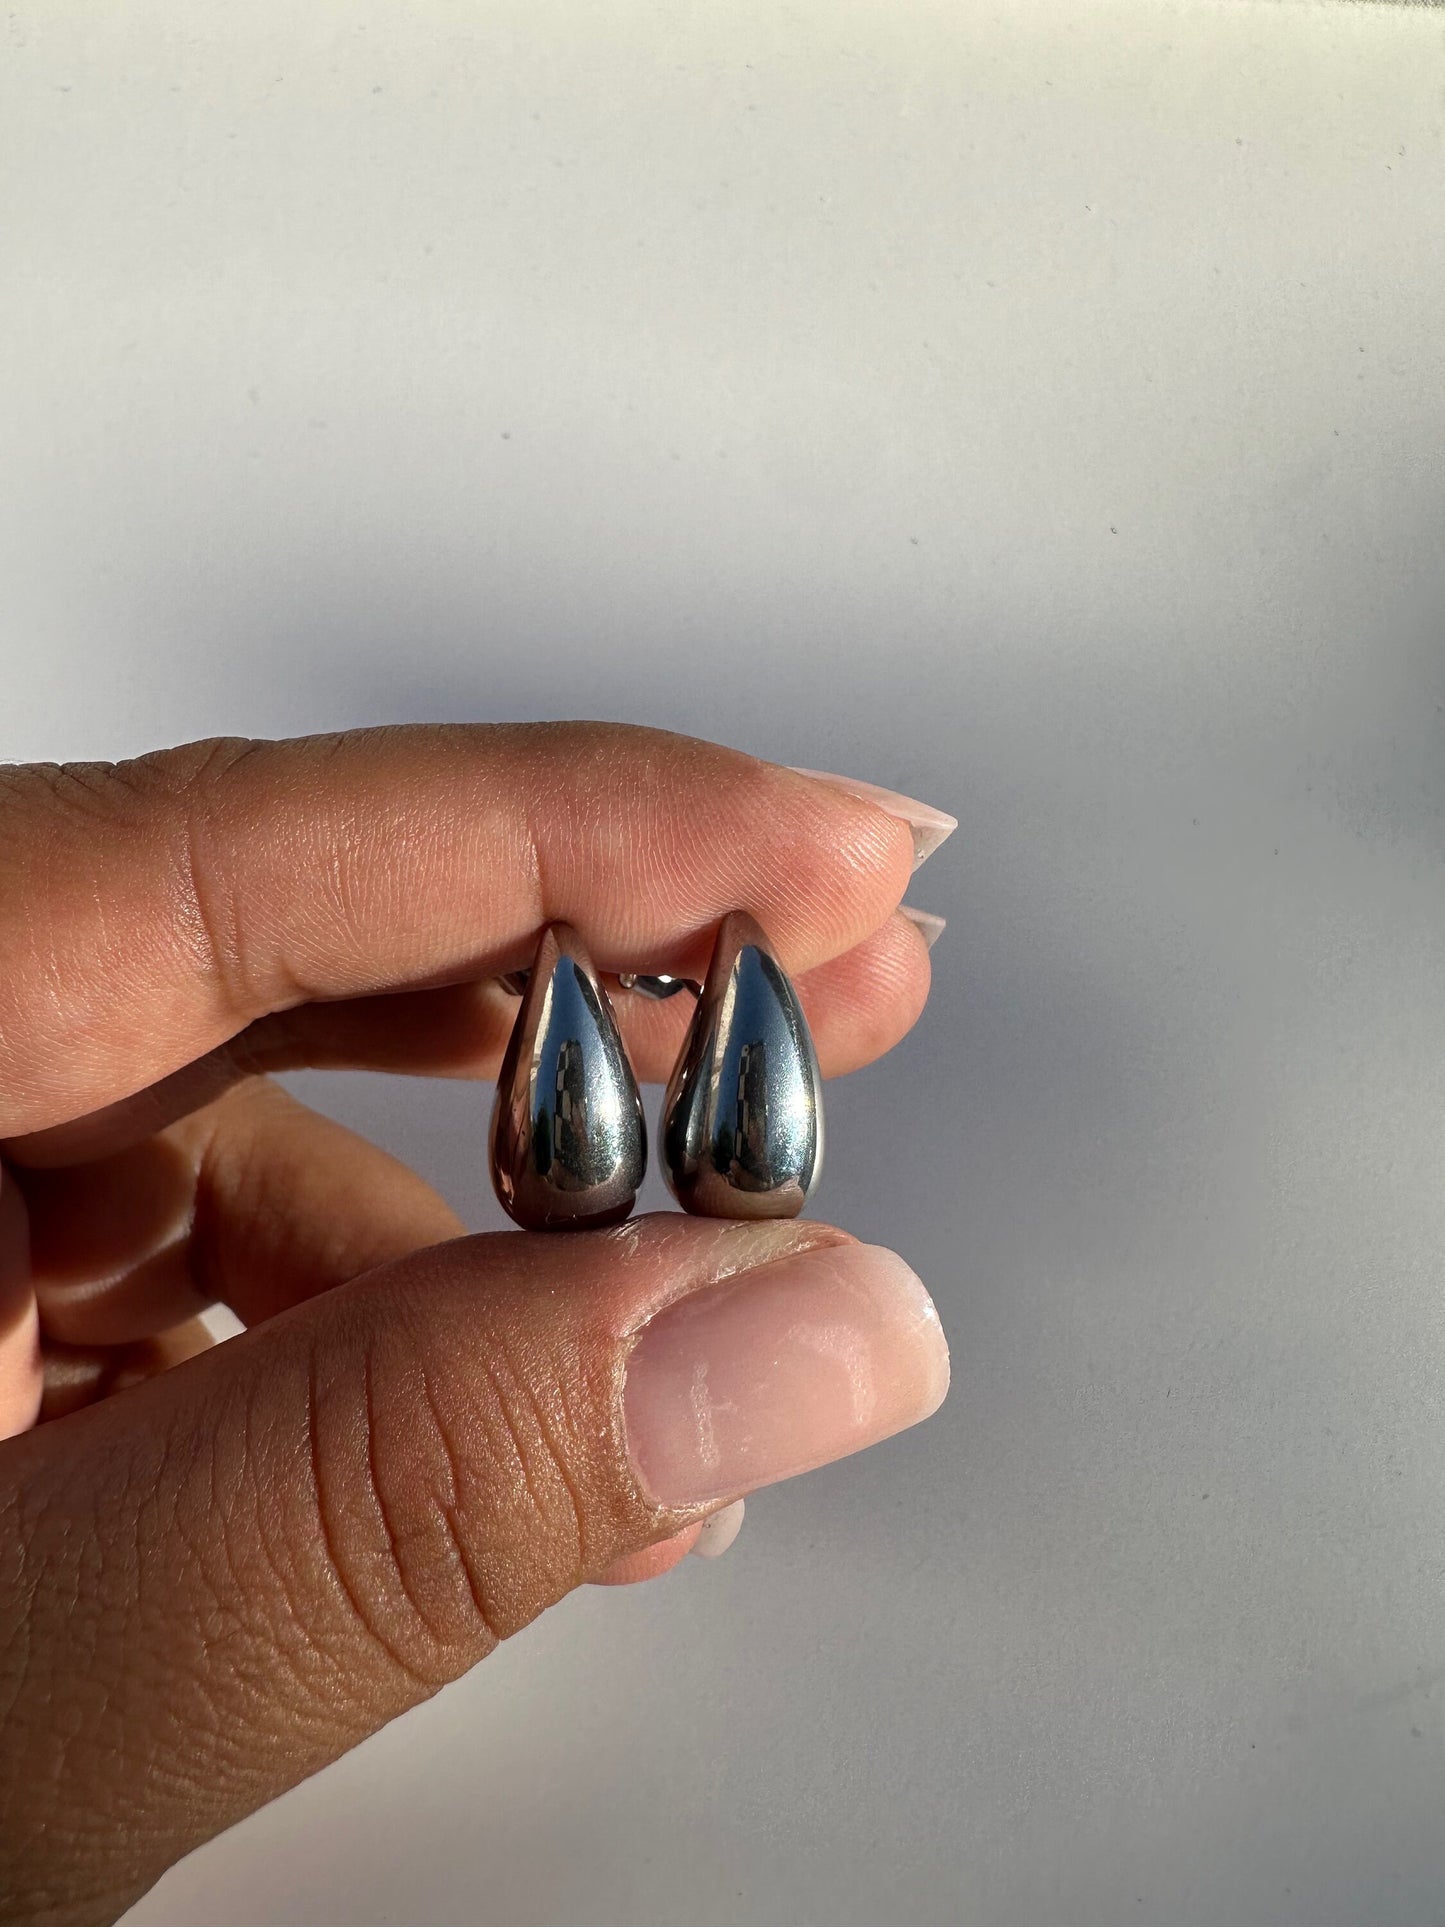 Chrome teardrop earrings, small teardrop earrings , stainless steel teardrop earrings, chunky earrings, statement earrings